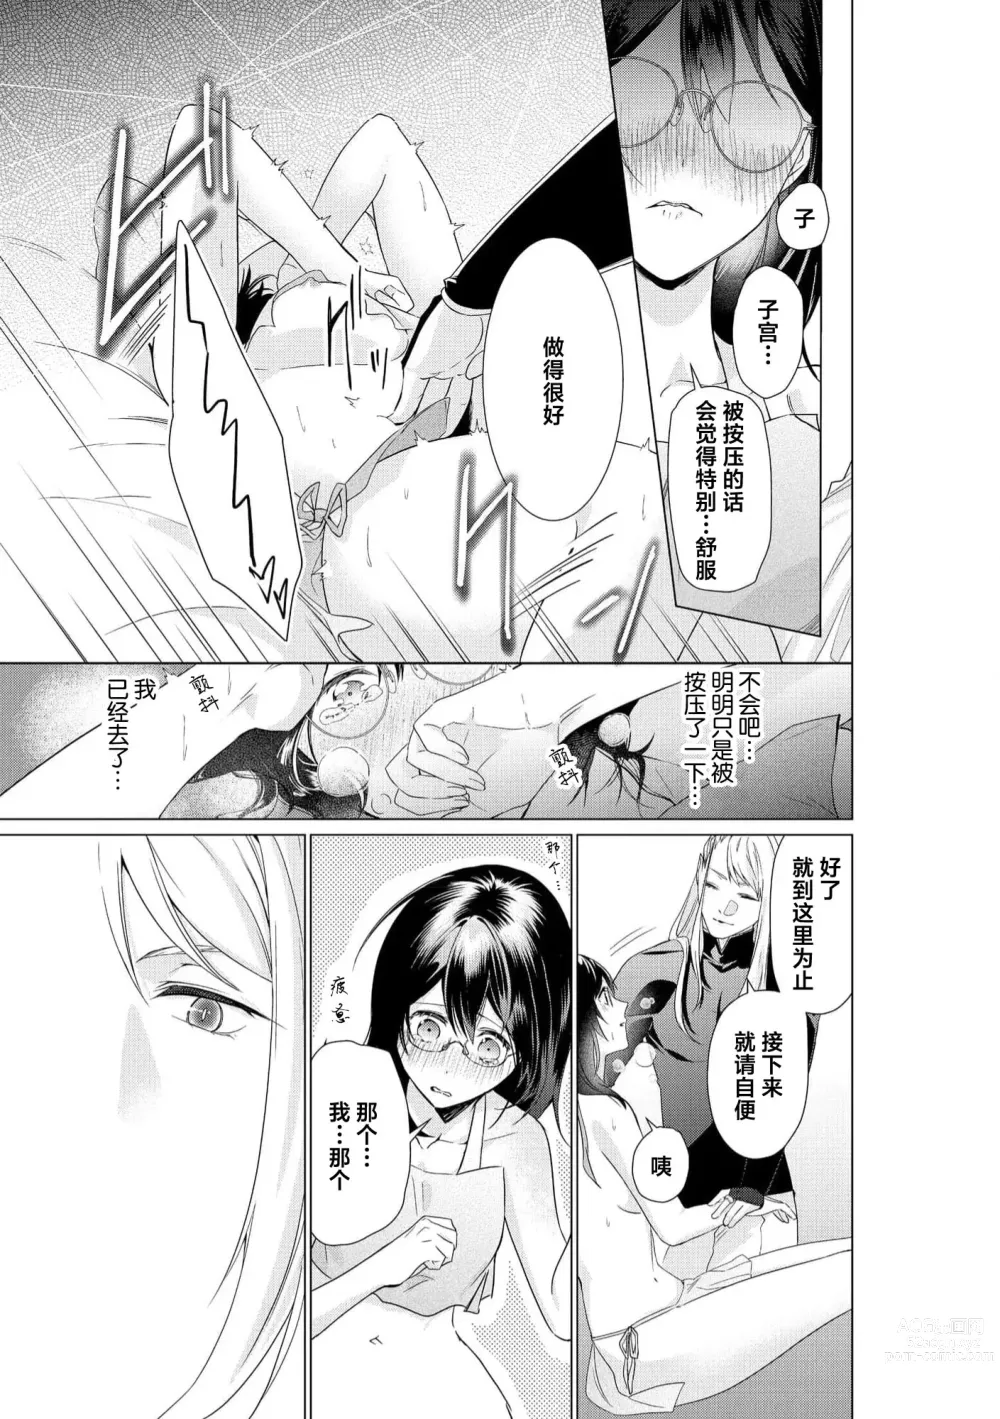 Page 25 of manga 白蛇大人的溺爱试验~苦命OL在异世界缔结了淫荡契约…~